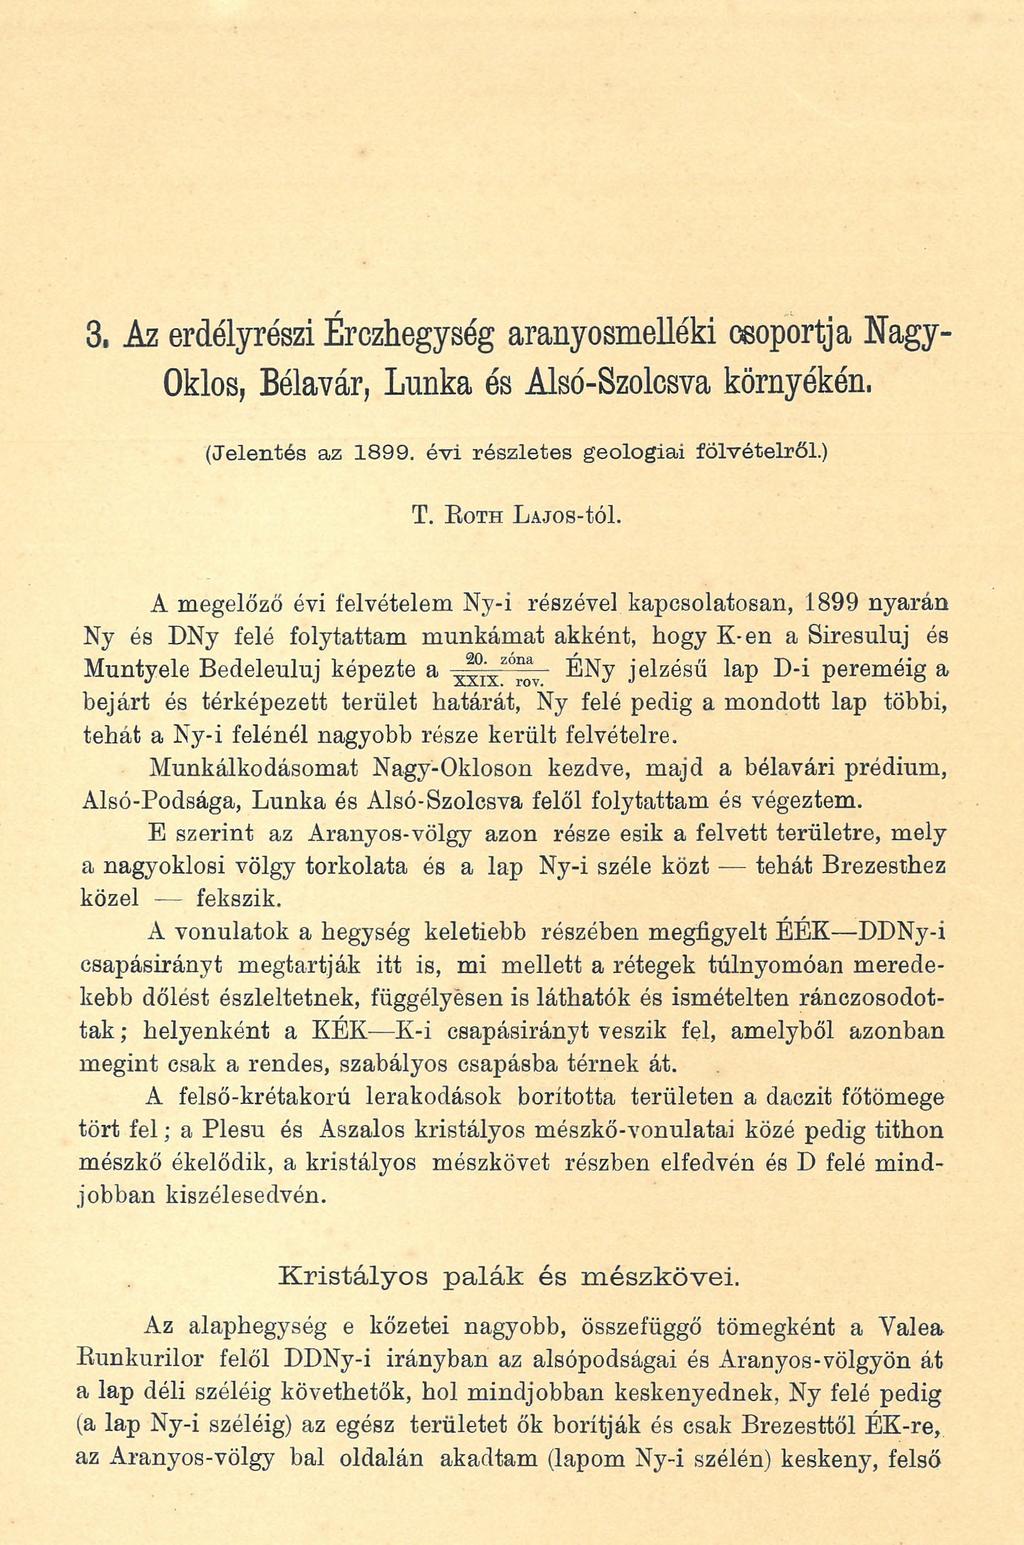 3. Az erdélyrészi Érczhegység aranyosmelléki csoportja Nagy- Oklos, Bélavár, Lunka és Alsé-Szolcsva környékén, (Jelentés az 1899. évi részletes geológiai fölvételről.) T. E o TH LAJOS-tÓl.